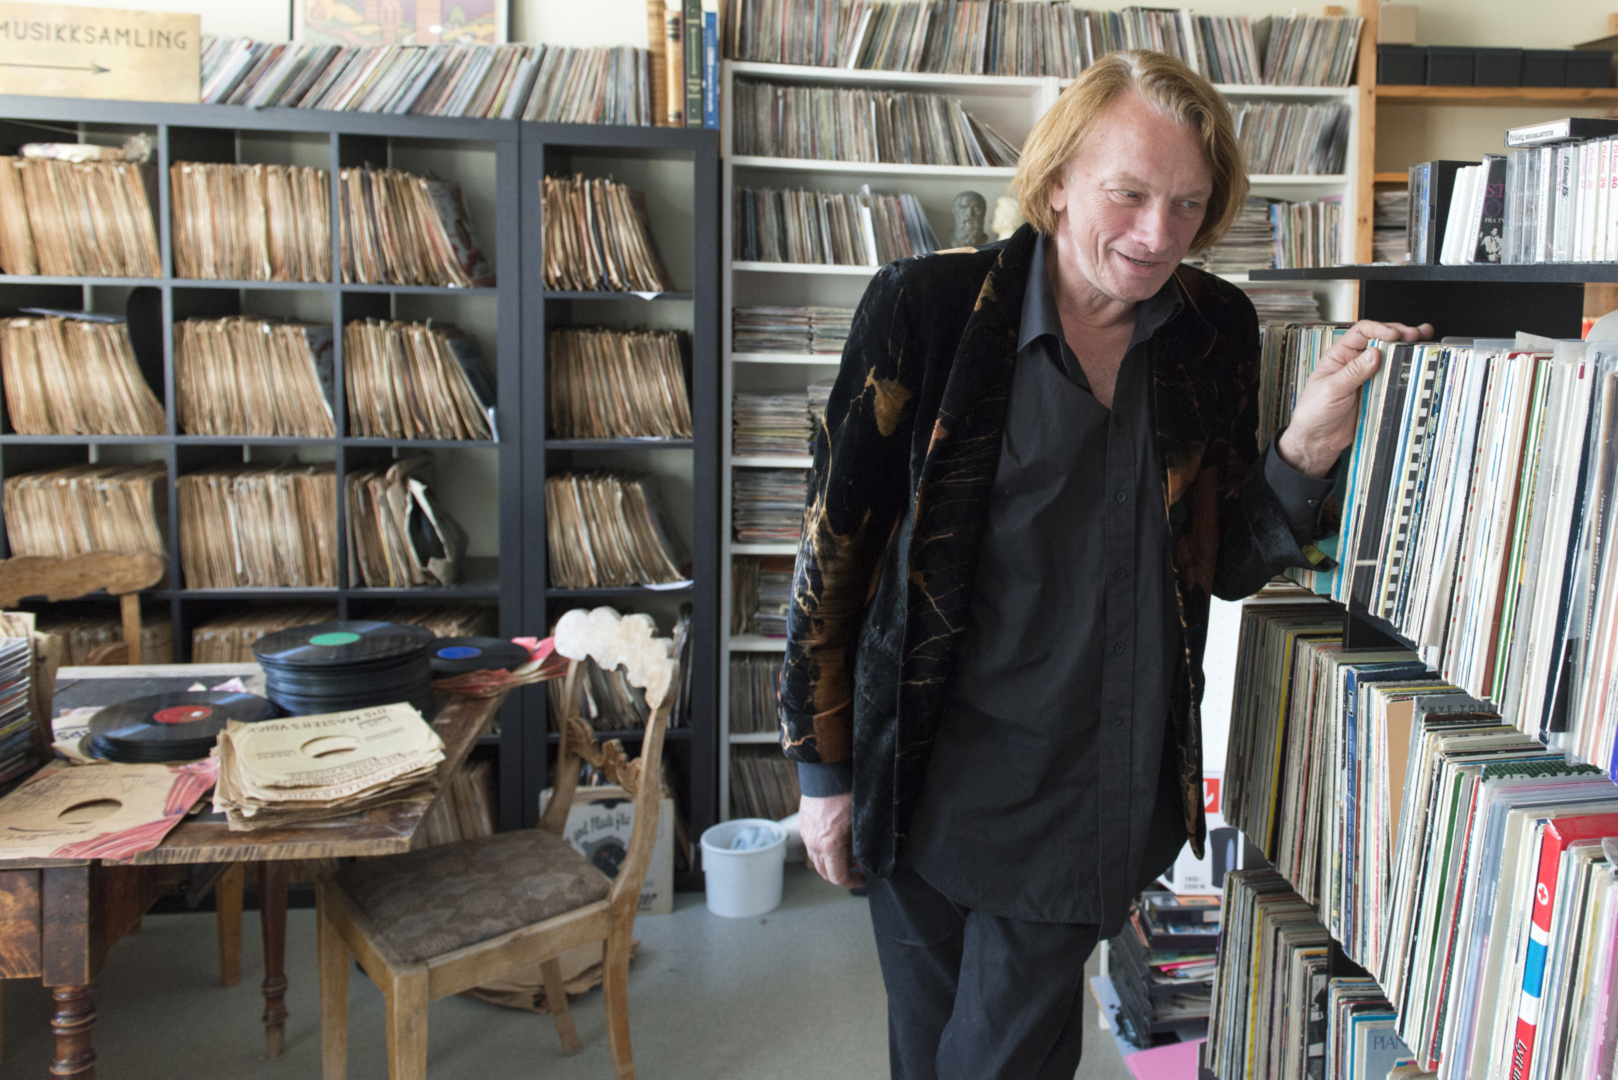 Samler: Jan Eggum samler på alt som hører inn under temaet norsk musikk. Han har 97 prosent av alle norske LP-plater som er utgitt. 